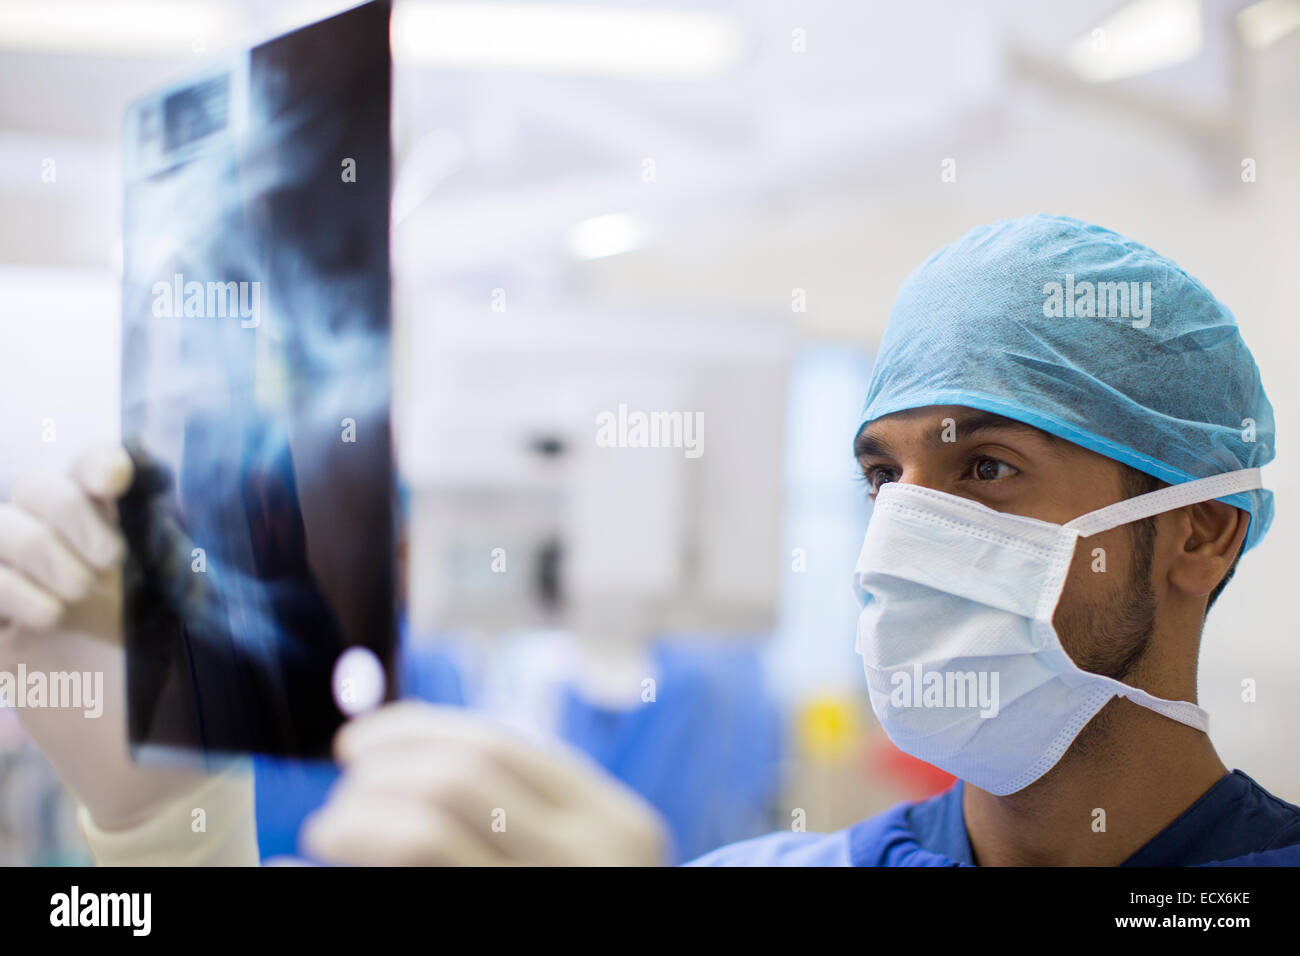 Chiusura del chirurgo che indossa il cappuccio chirurgico e una maschera per cerchi a raggi x in sala operatoria Foto Stock